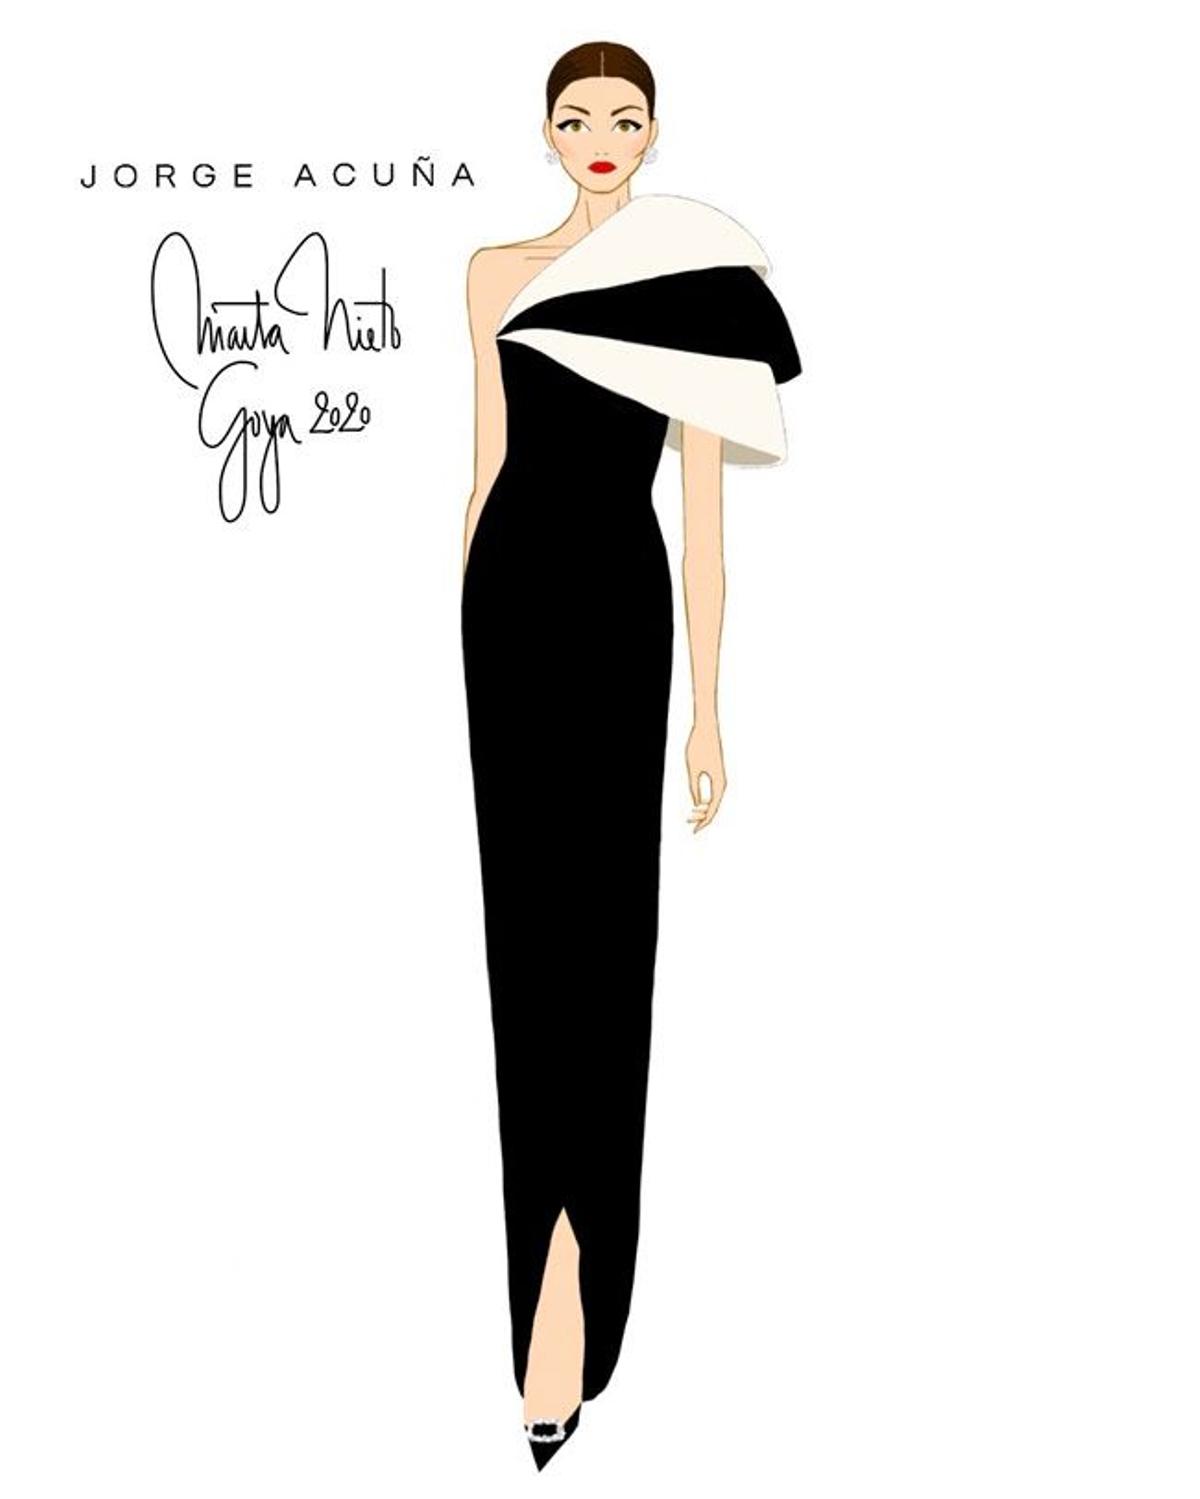 Boceto de Marta Nieto con vestido de Jorge Acuña en los Premios Goya 2020